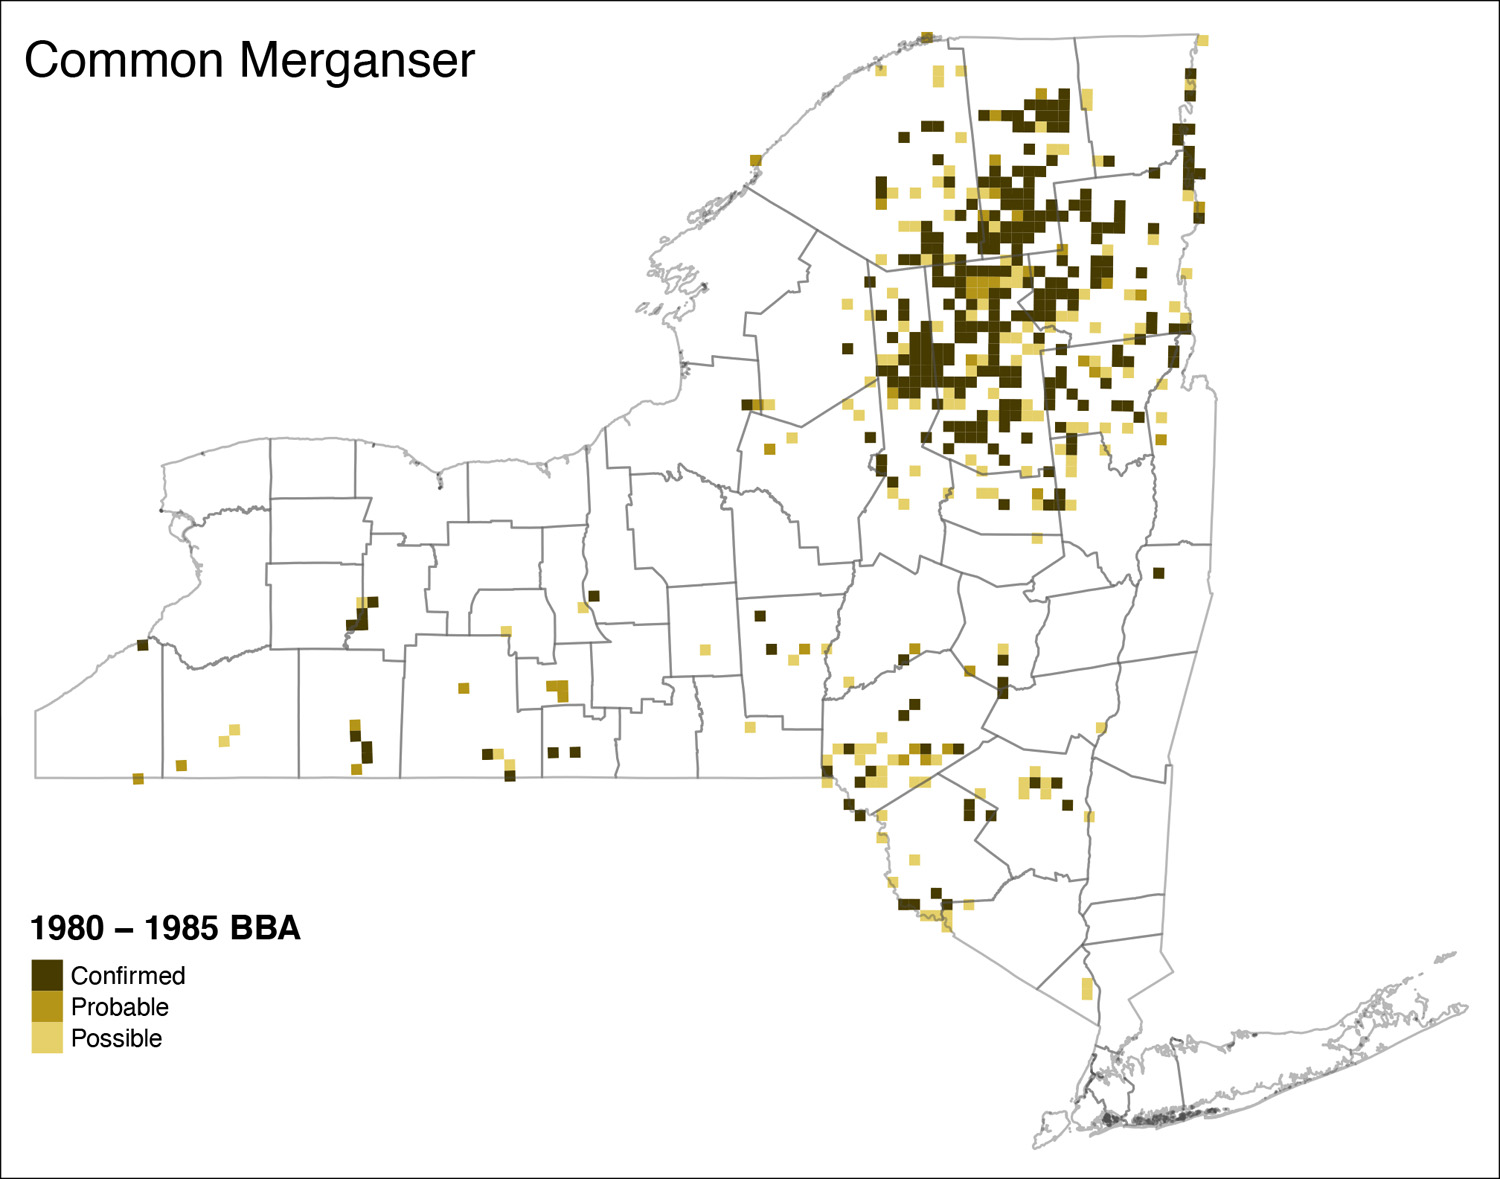 Common Merganser Atlas 1 Distribution